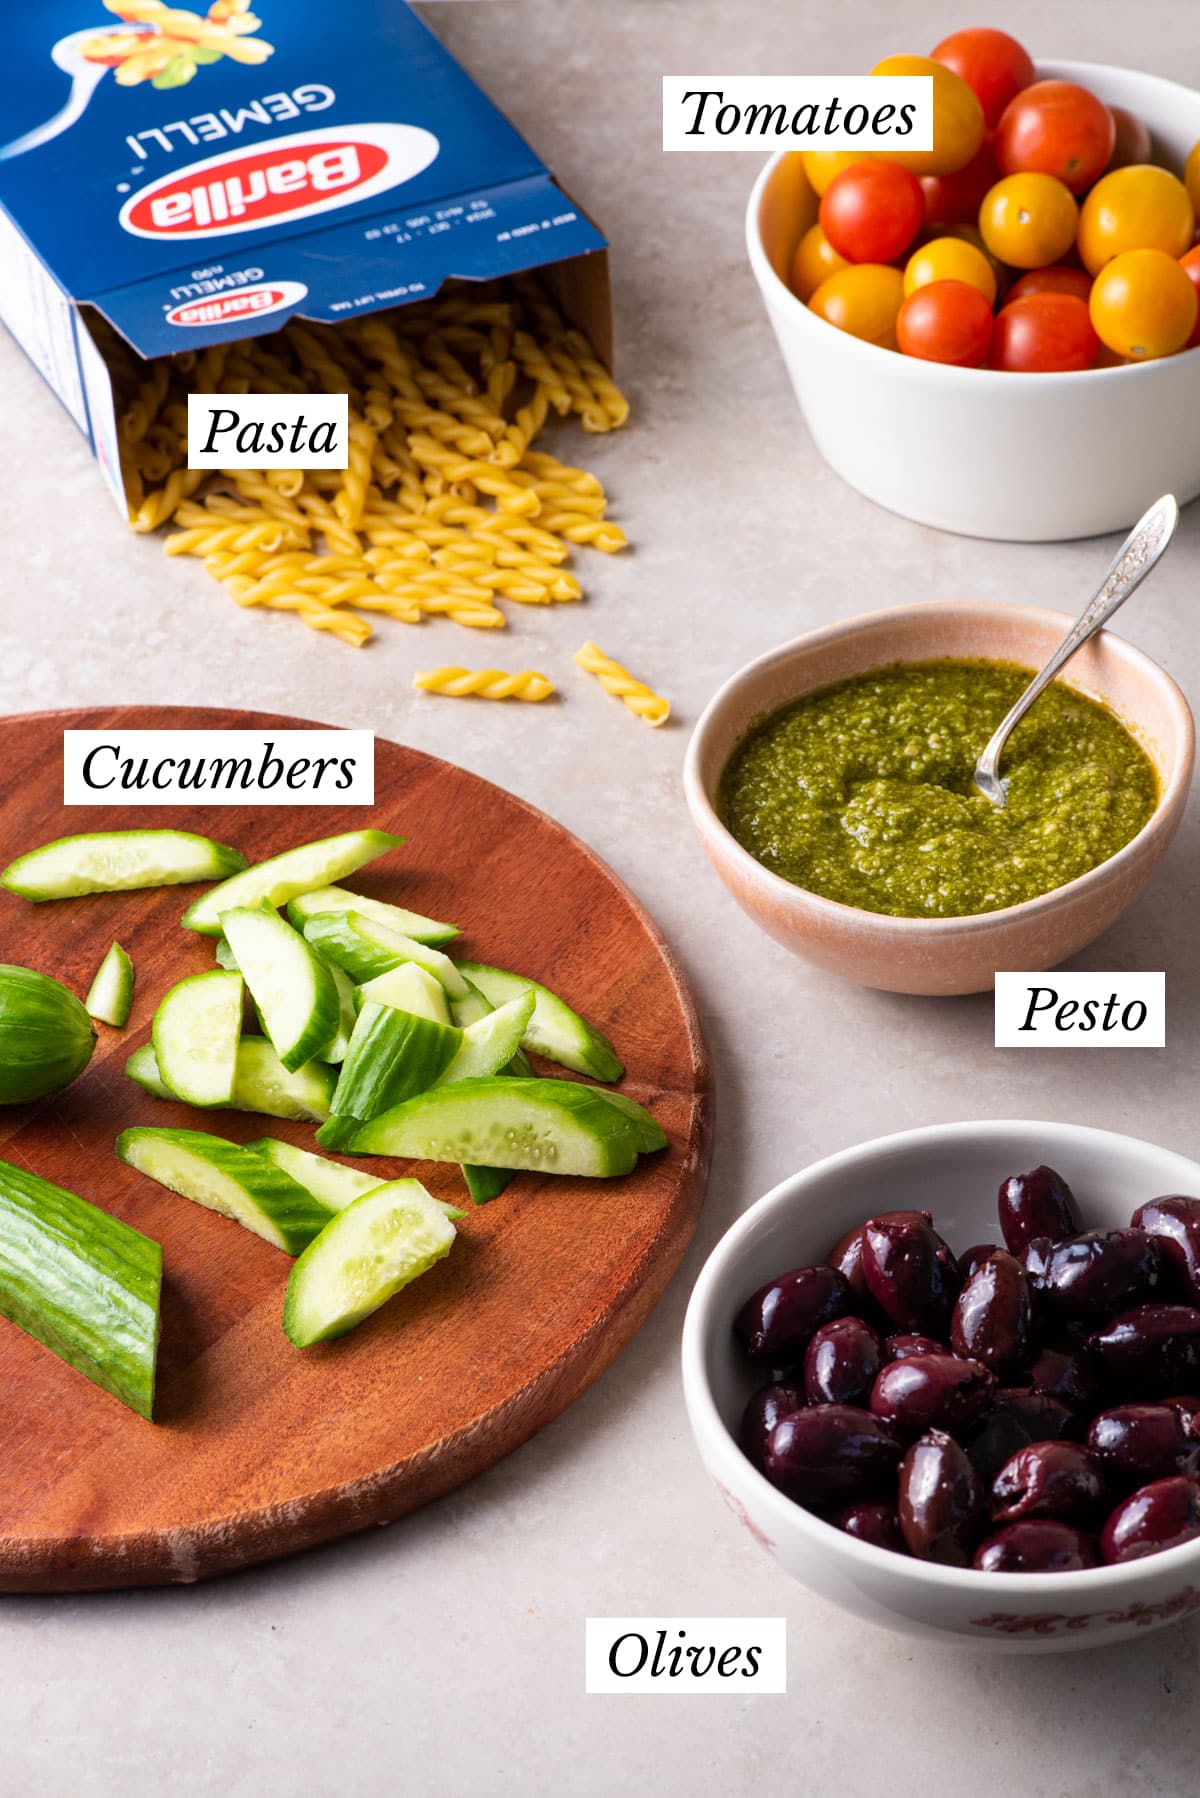 Ingredients gathered to make a vegan pesto pasta salad recipe.